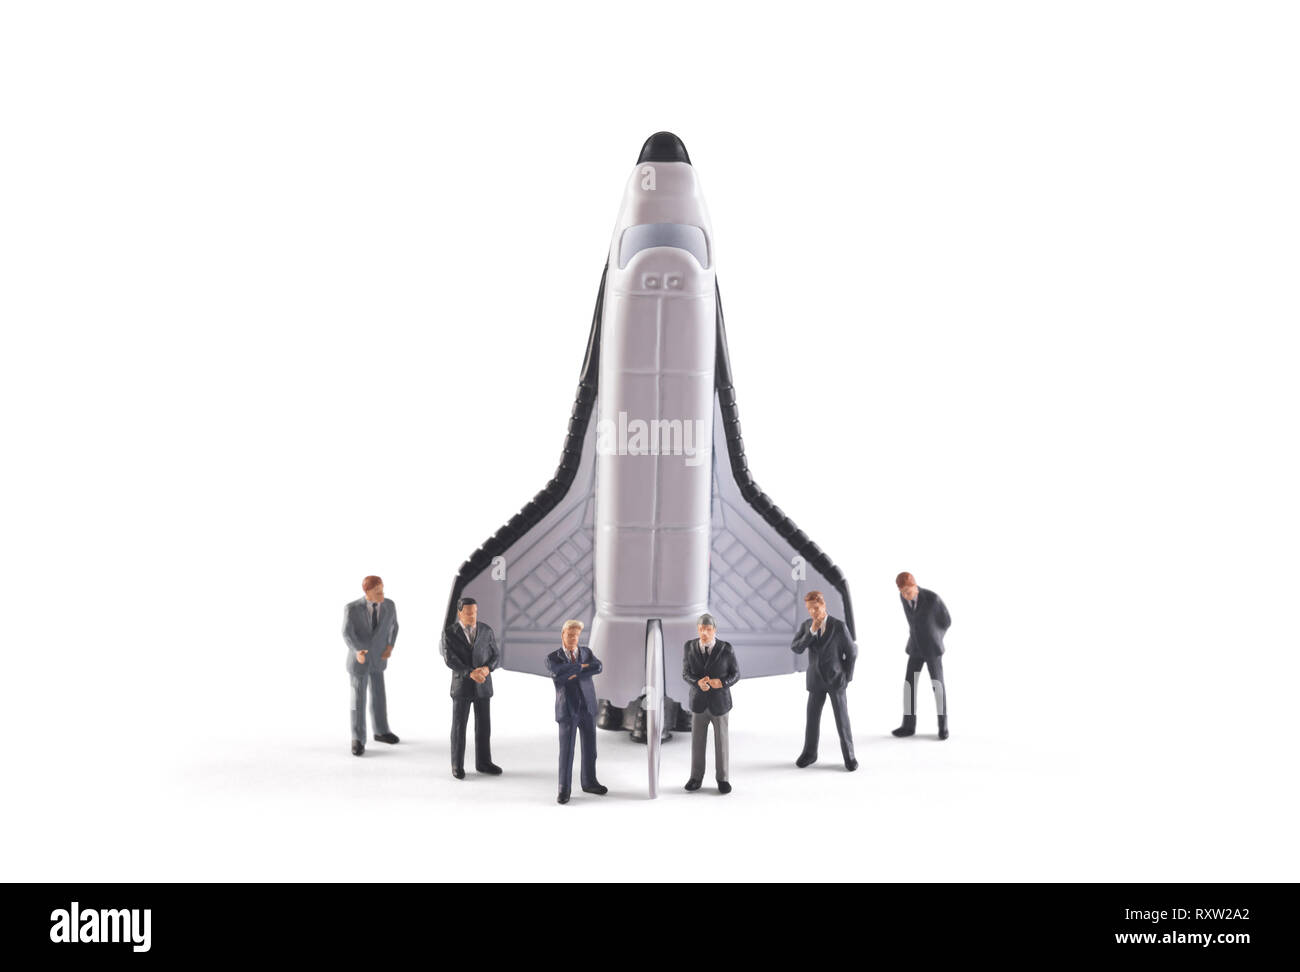 Concetto di avvio. Le figure di imprenditore con lo space shuttle su sfondo bianco Foto Stock